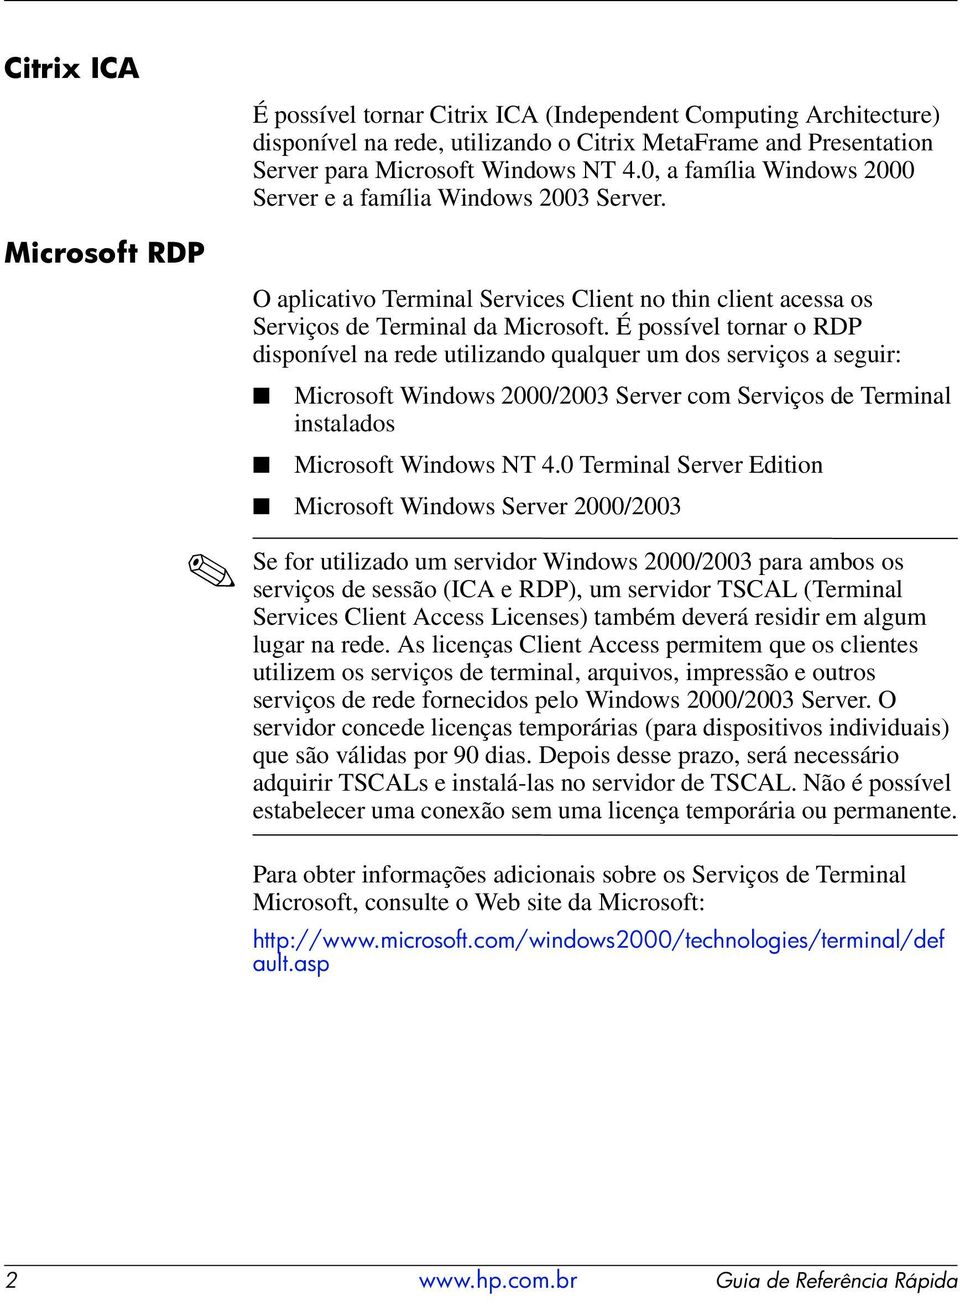 É possível tornar o RDP disponível na rede utilizando qualquer um dos serviços a seguir: Microsoft Windows 2000/2003 Server com Serviços de Terminal instalados Microsoft Windows NT 4.